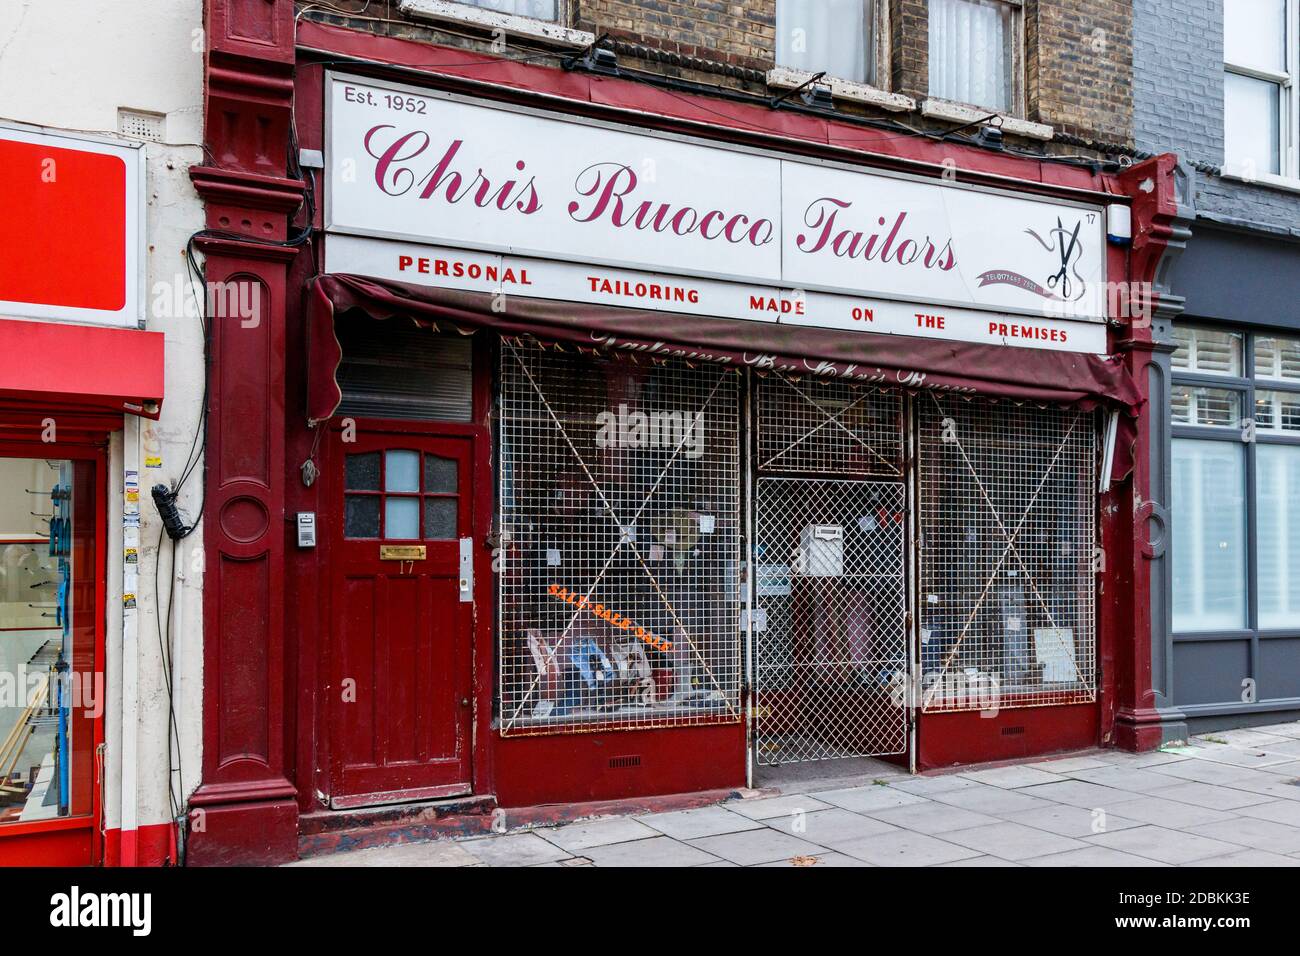 La façade traditionnelle classique de Chris Ruocco Tailors, fermée lors du second confinement en cas de pandémie du coronavirus, Fortess Road, Kentish Town, Londres, Royaume-Uni Banque D'Images